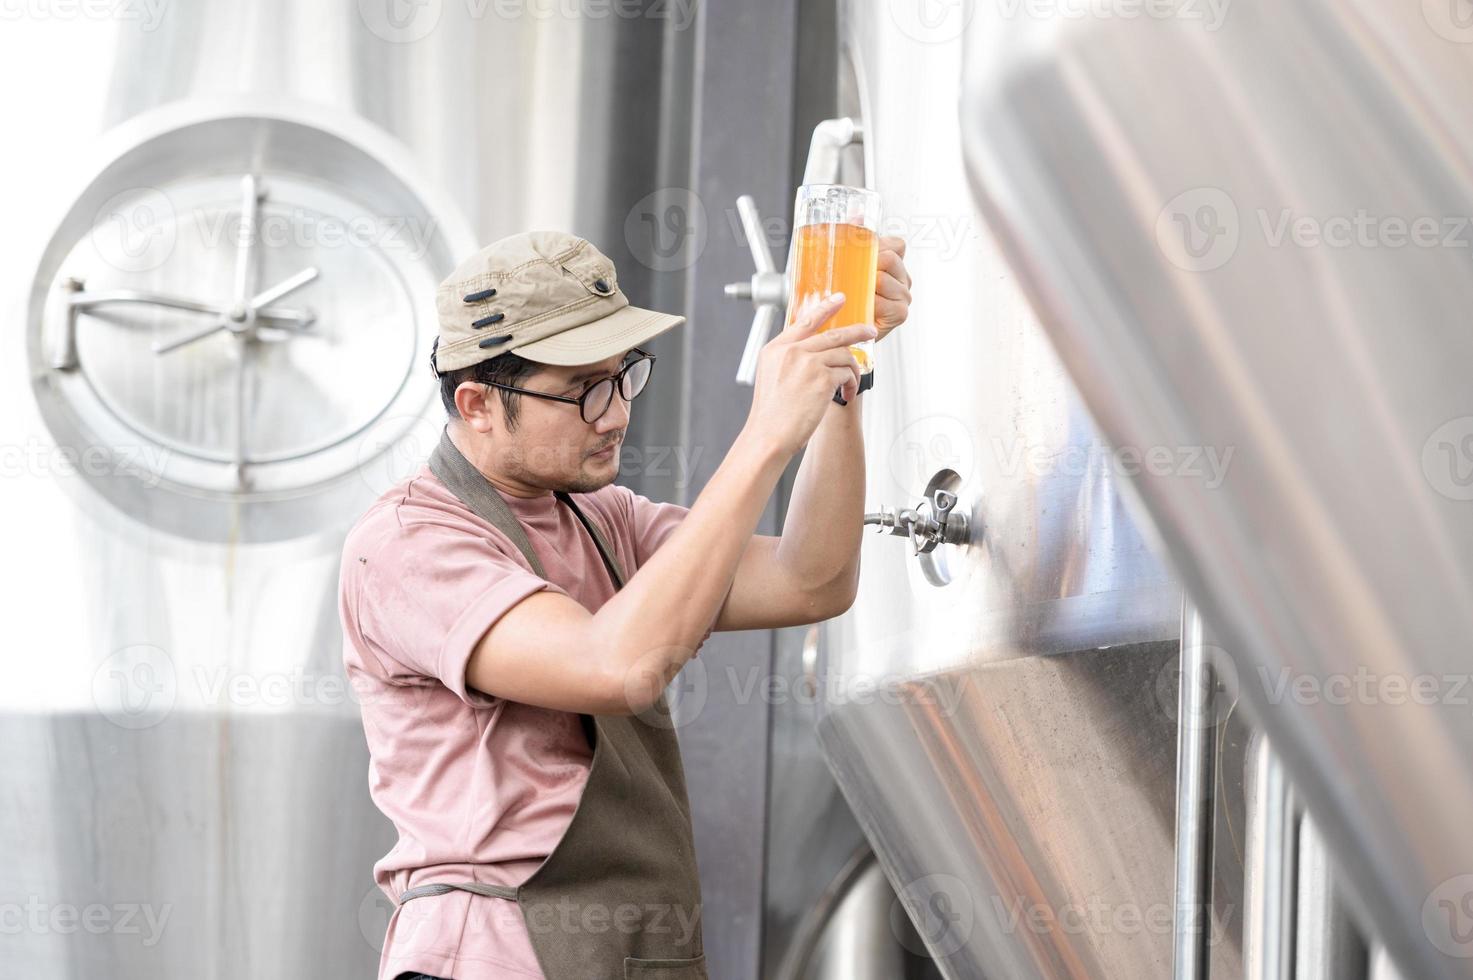 joven trabajador asiático que inspecciona la calidad de la cervecería con un vaso de cerveza artesanal que evalúa la apariencia visual después de la preparación mientras trabaja en una cervecería artesanal de procesamiento. foto